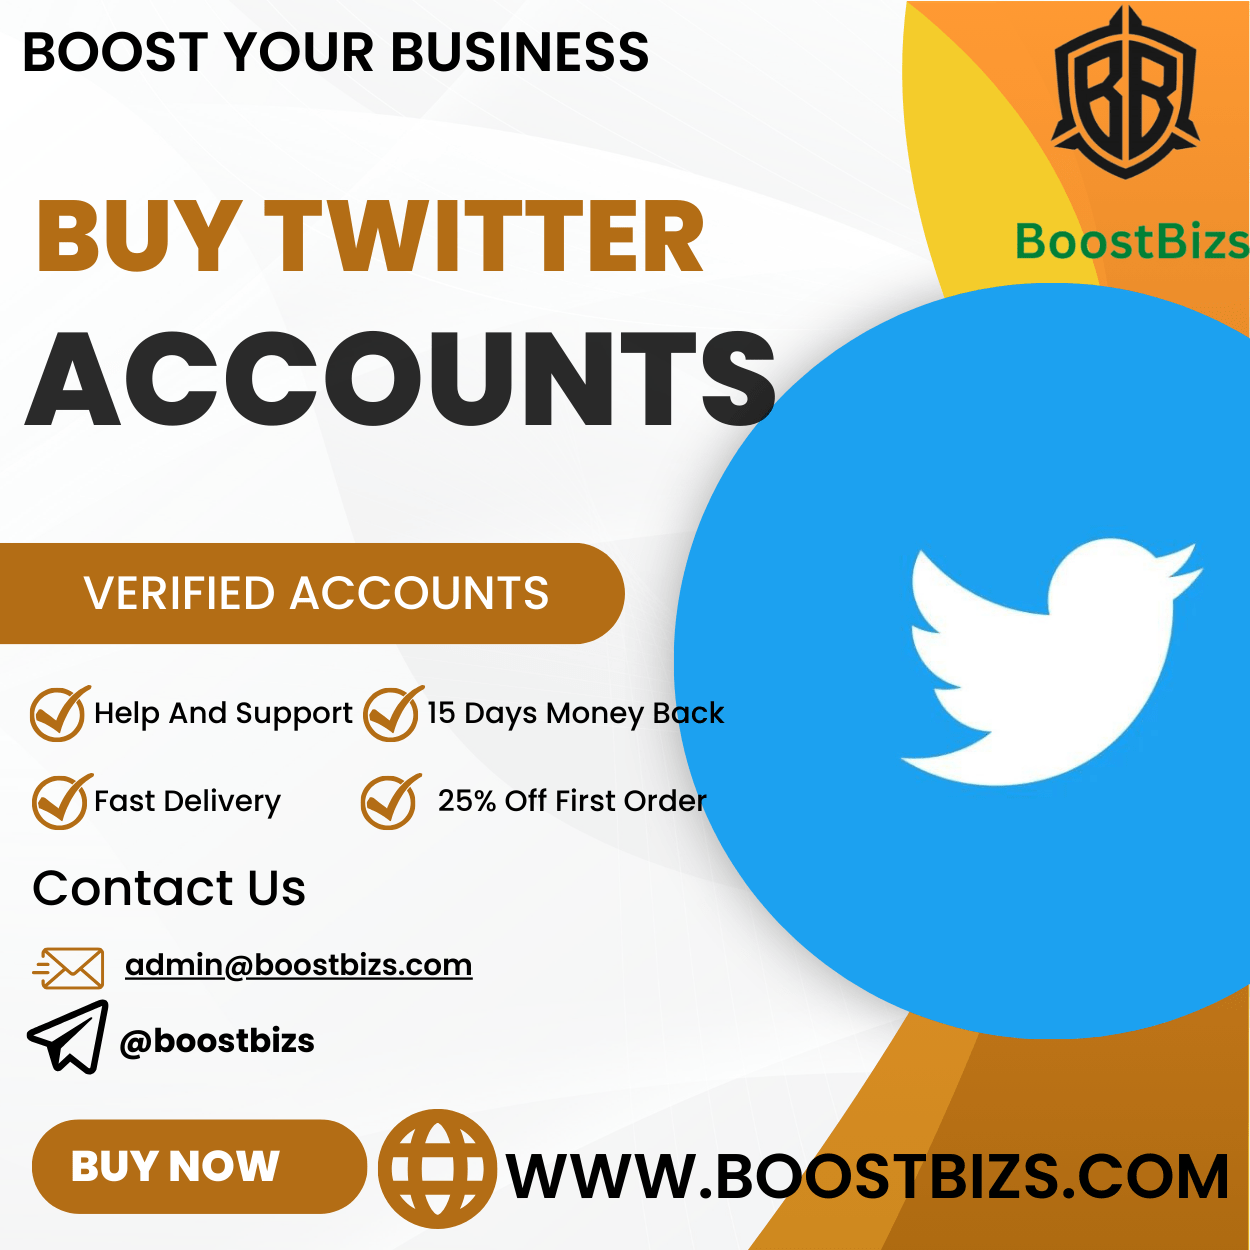 Buy Twitter Accounts - BOOSTBIZS